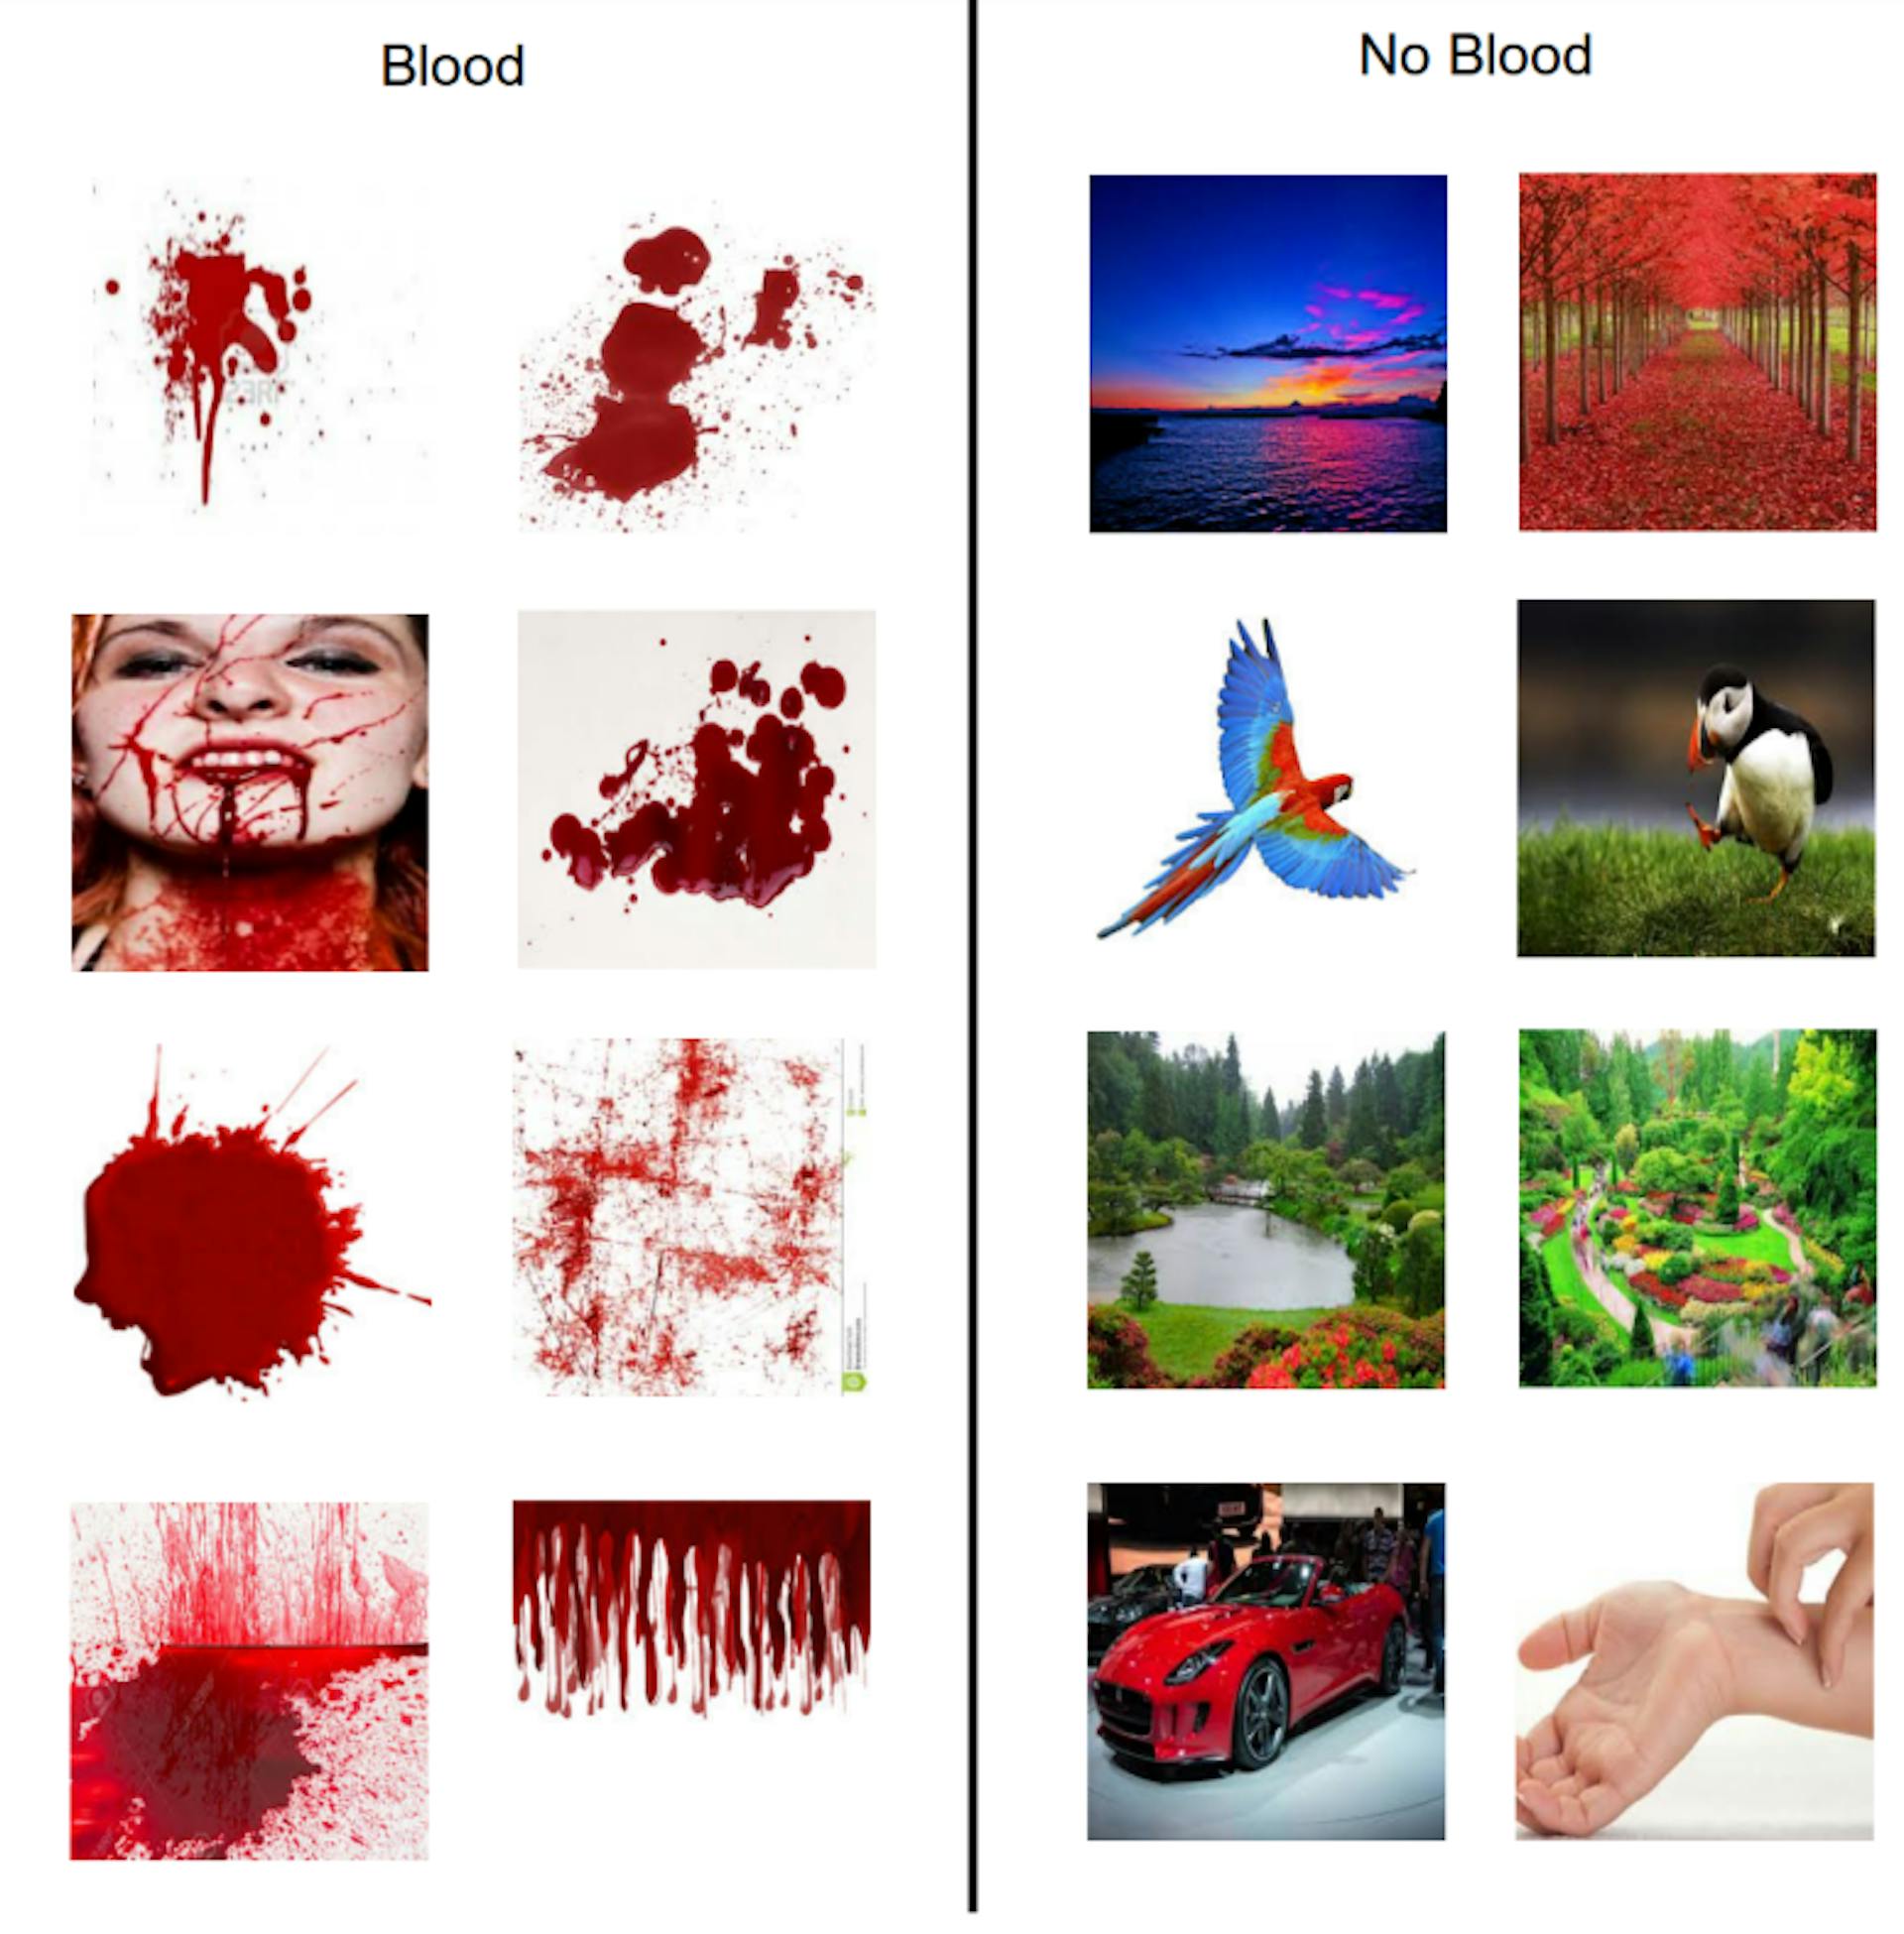 Figure 3.3 : Figure montrant des exemples d'images téléchargées depuis Google pour générer des modèles sanguins et non sanguins.